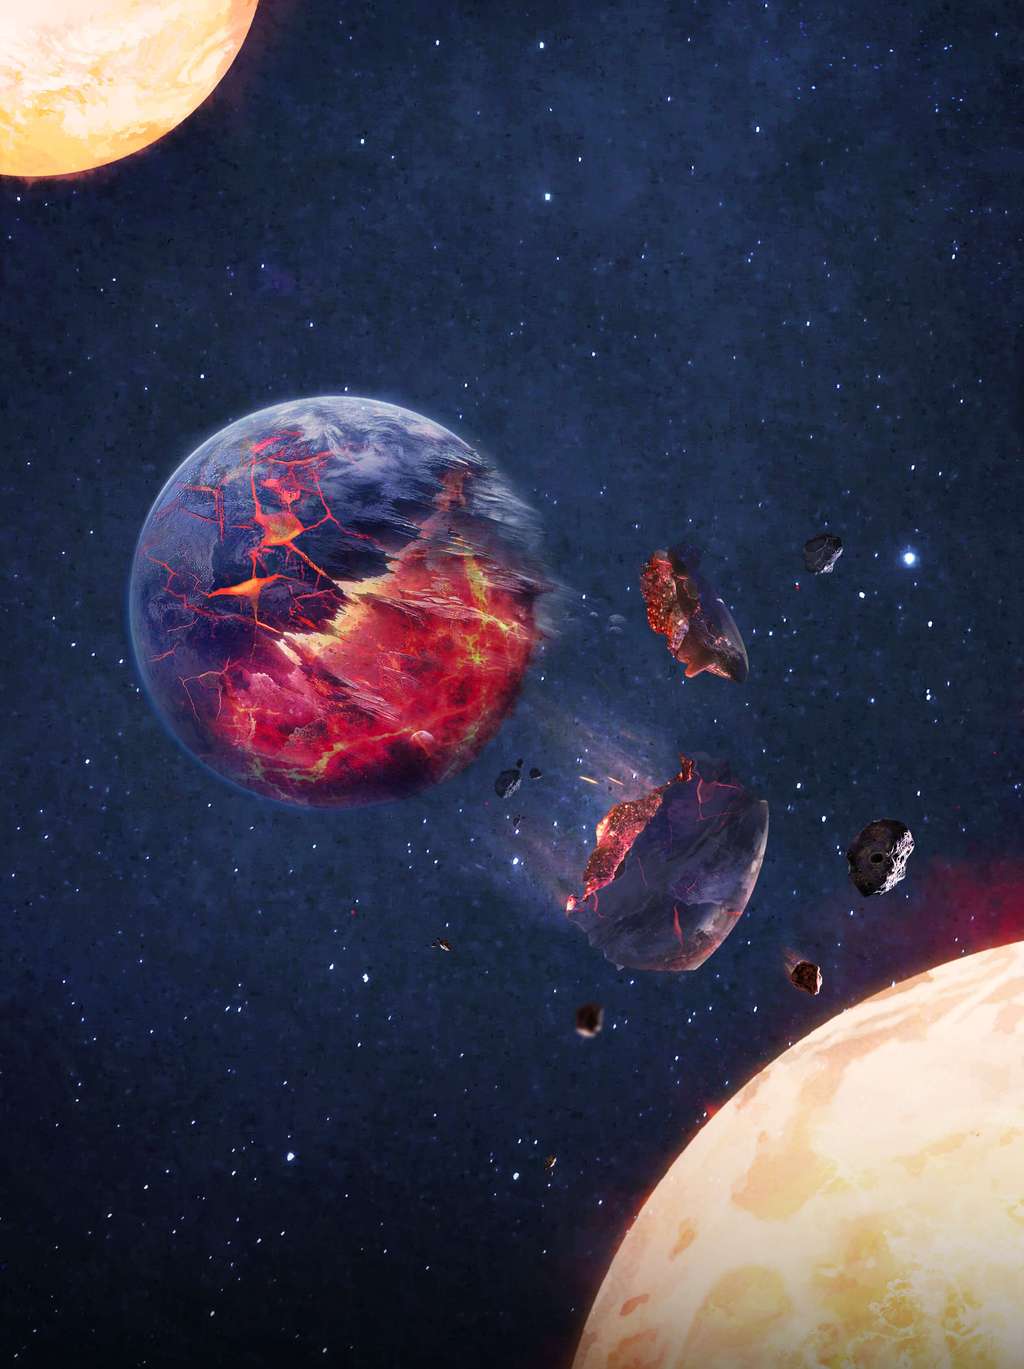 Vue d'artiste d'une étoile double avalant une jeune planète rocheuse. © intouchable, OPENVERSE